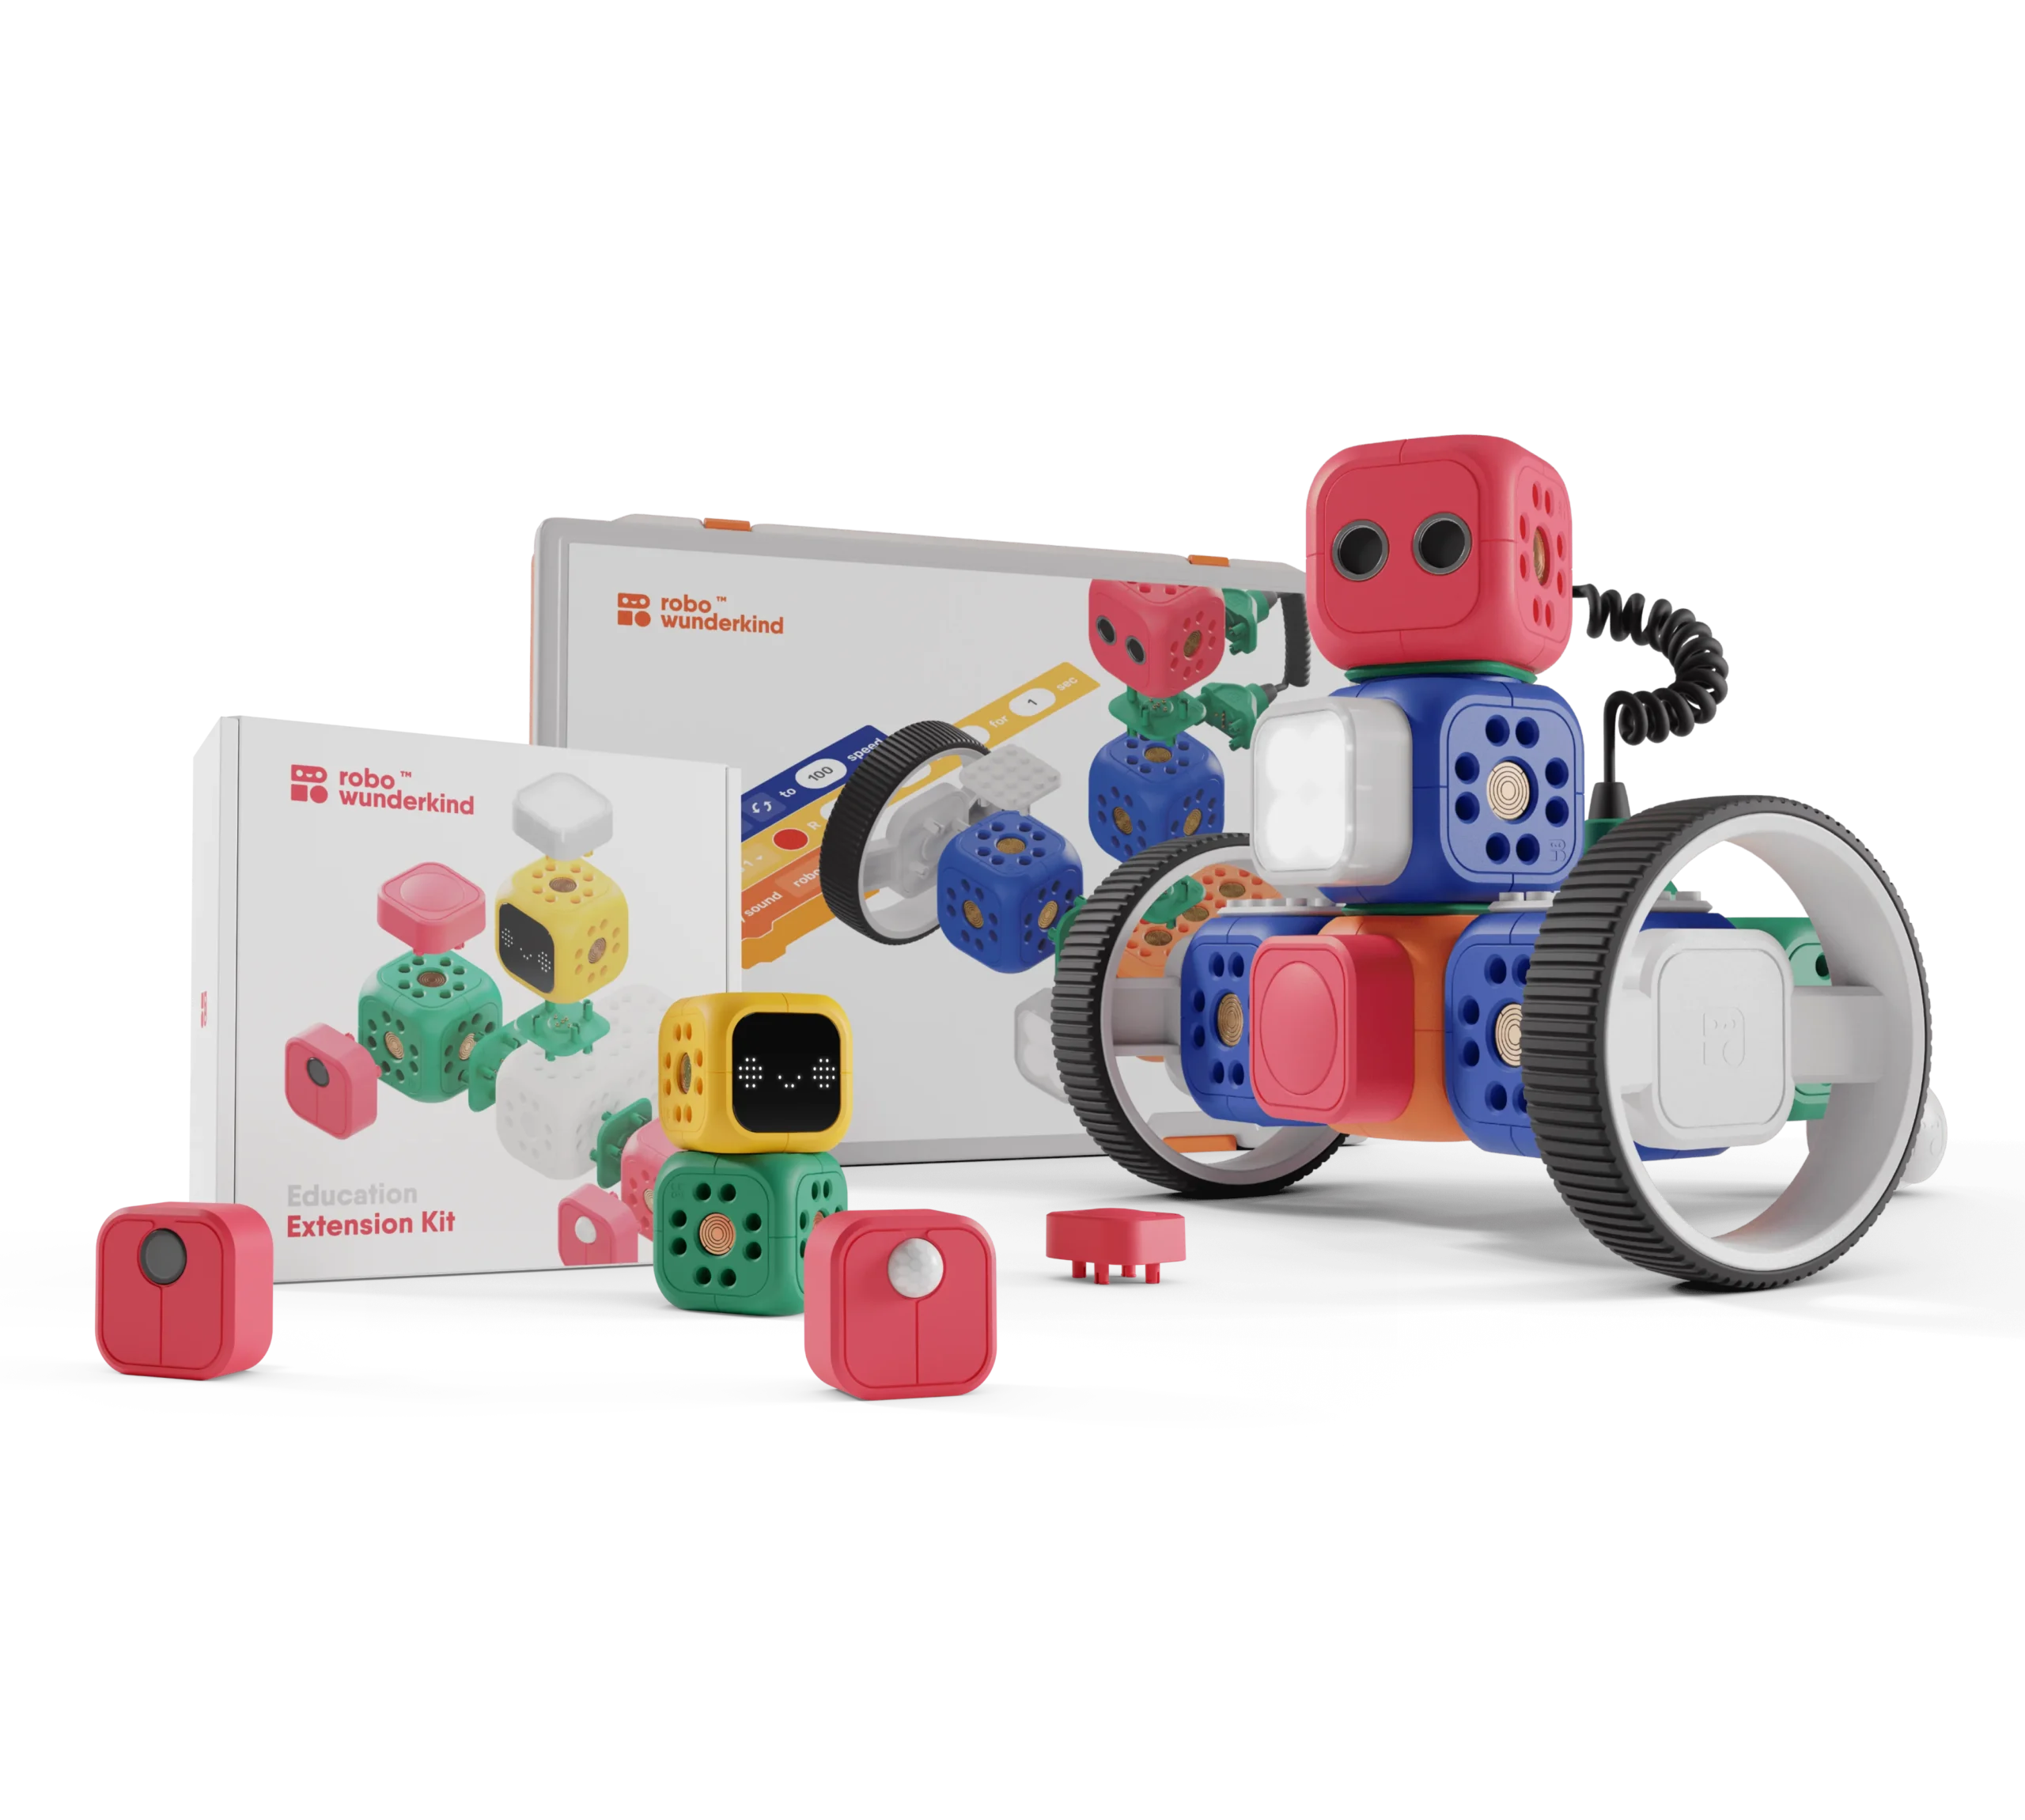 Starter Kit Robo Wunderkind 2 apps Gratis con Biblioteca de proyectos Juego de robótica Modular Juguete Stem con 5 Bloques y 12 Piezas Robots programables para niños 